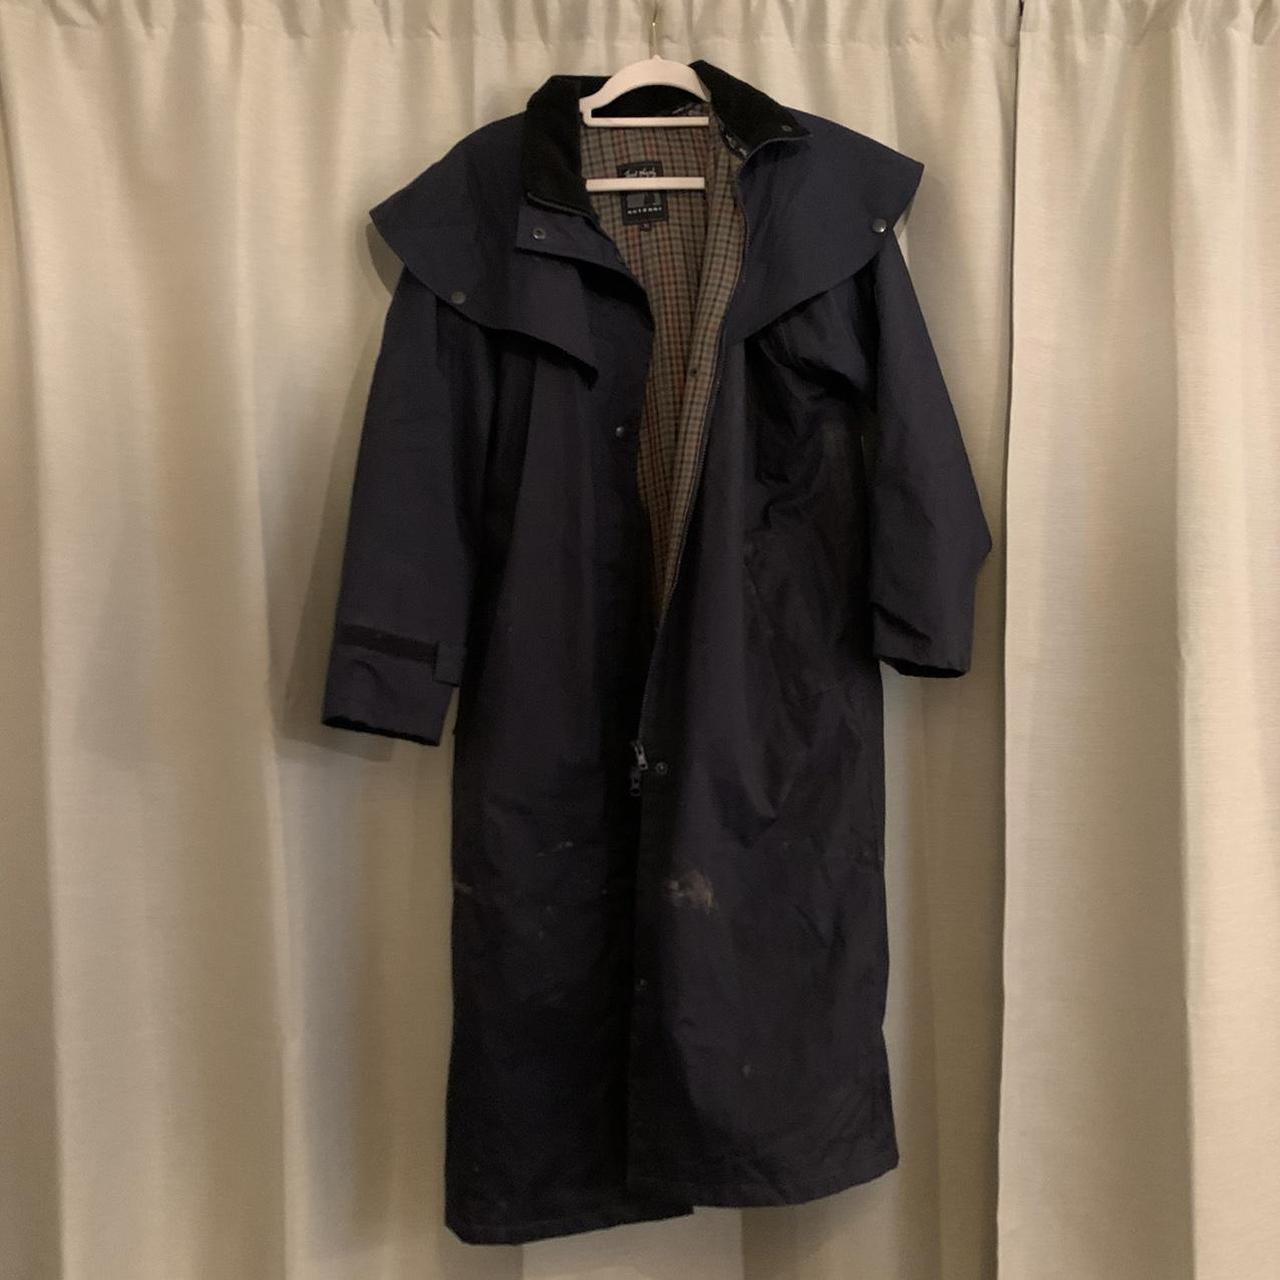 Jack Murphy rain coat size 10 Really heavy duty -... - Depop